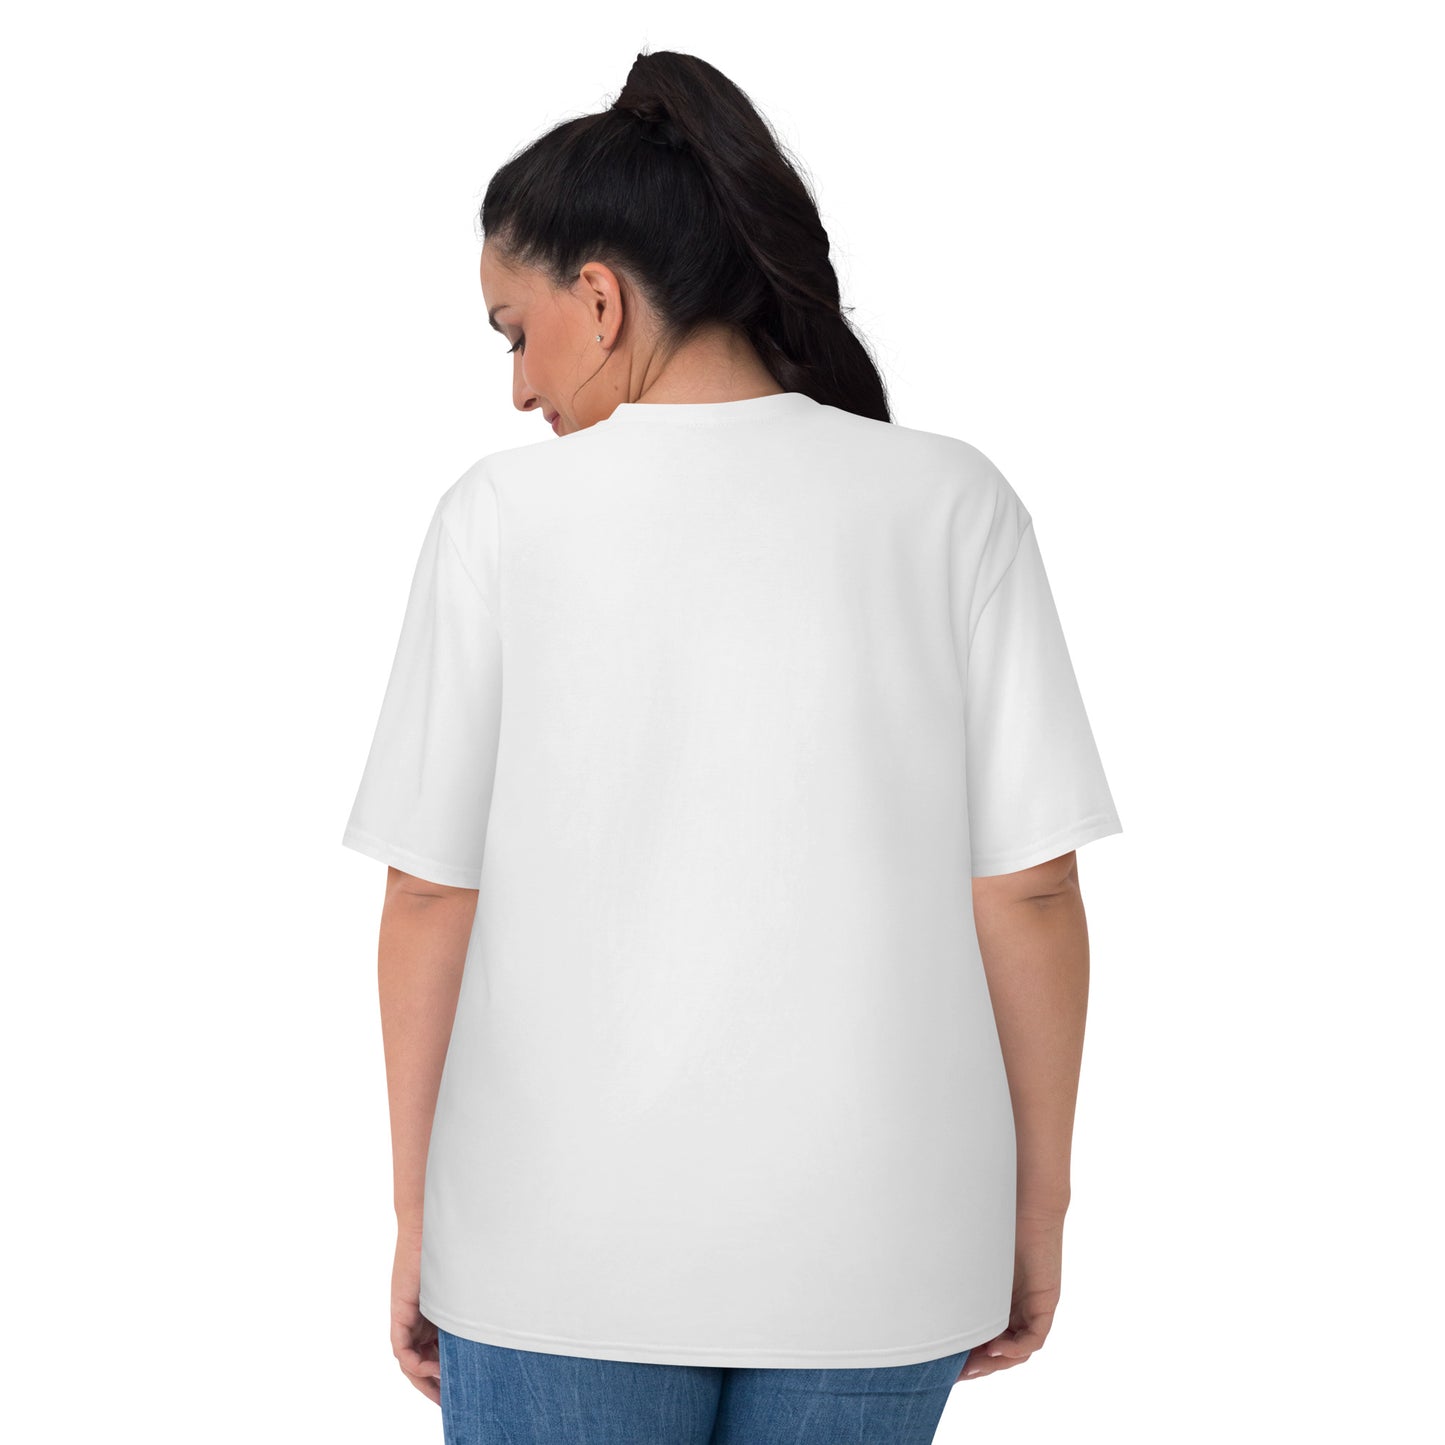 Women's T-shirt B00B5